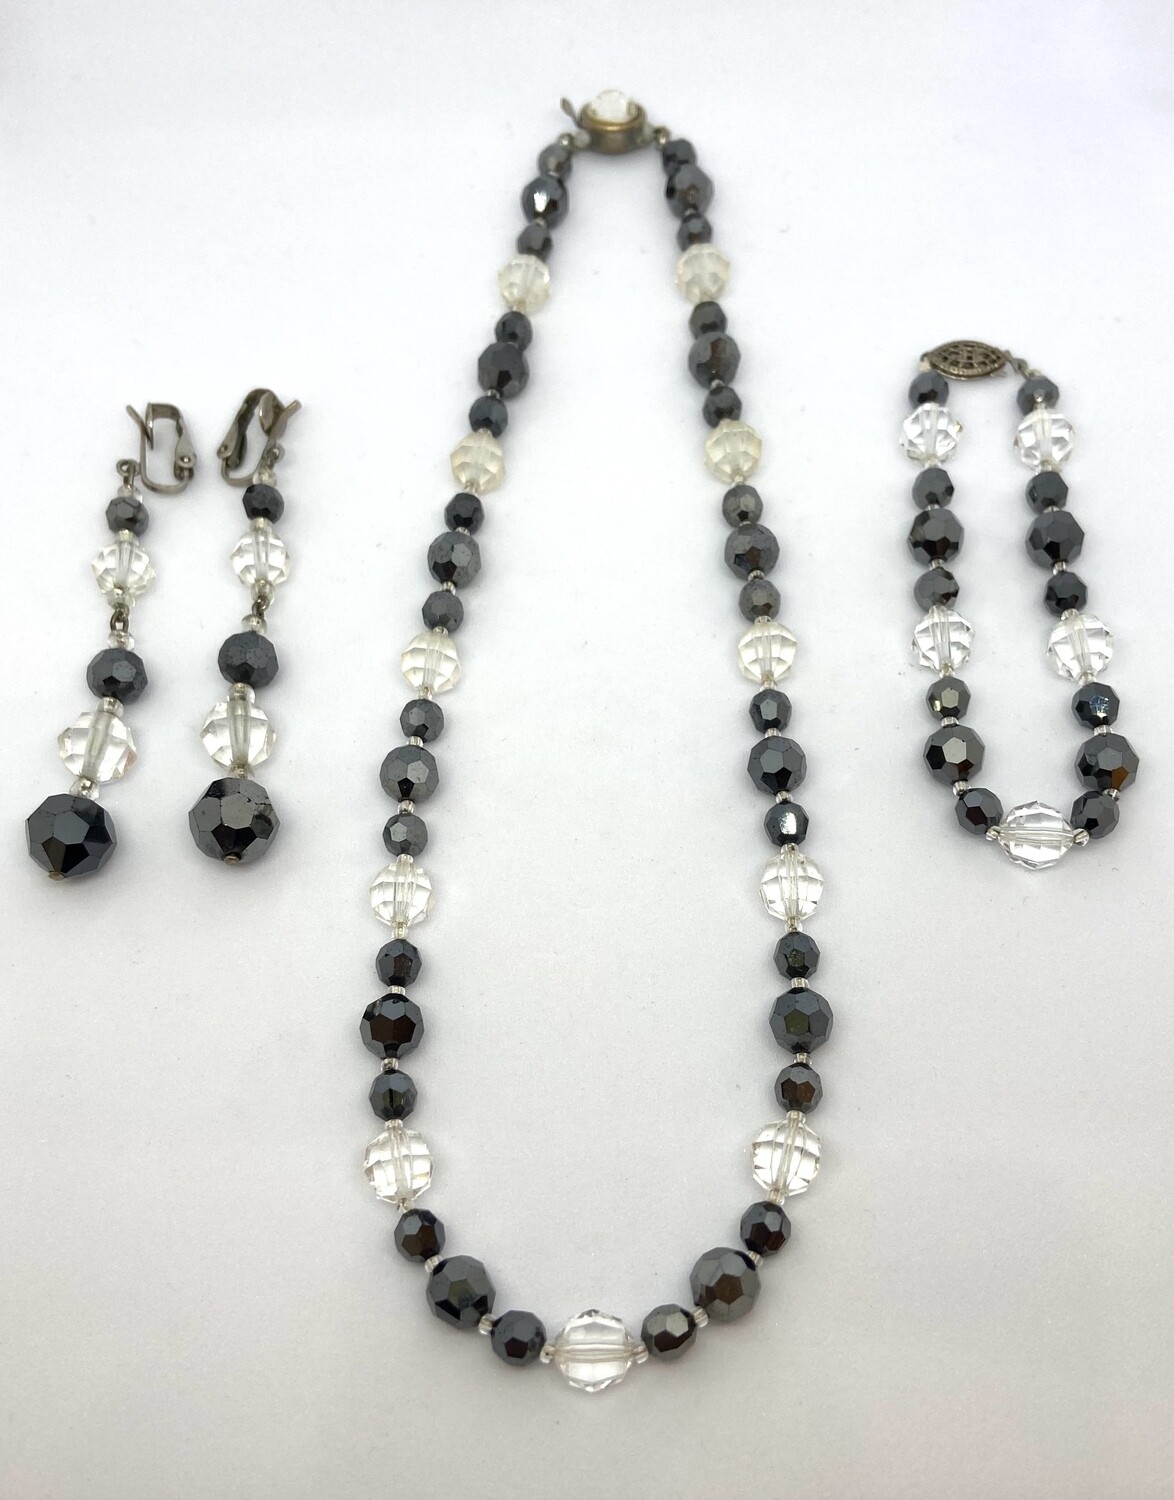 Vintage Black and White Rhinestone Necklace, Earring, Bracelet Set